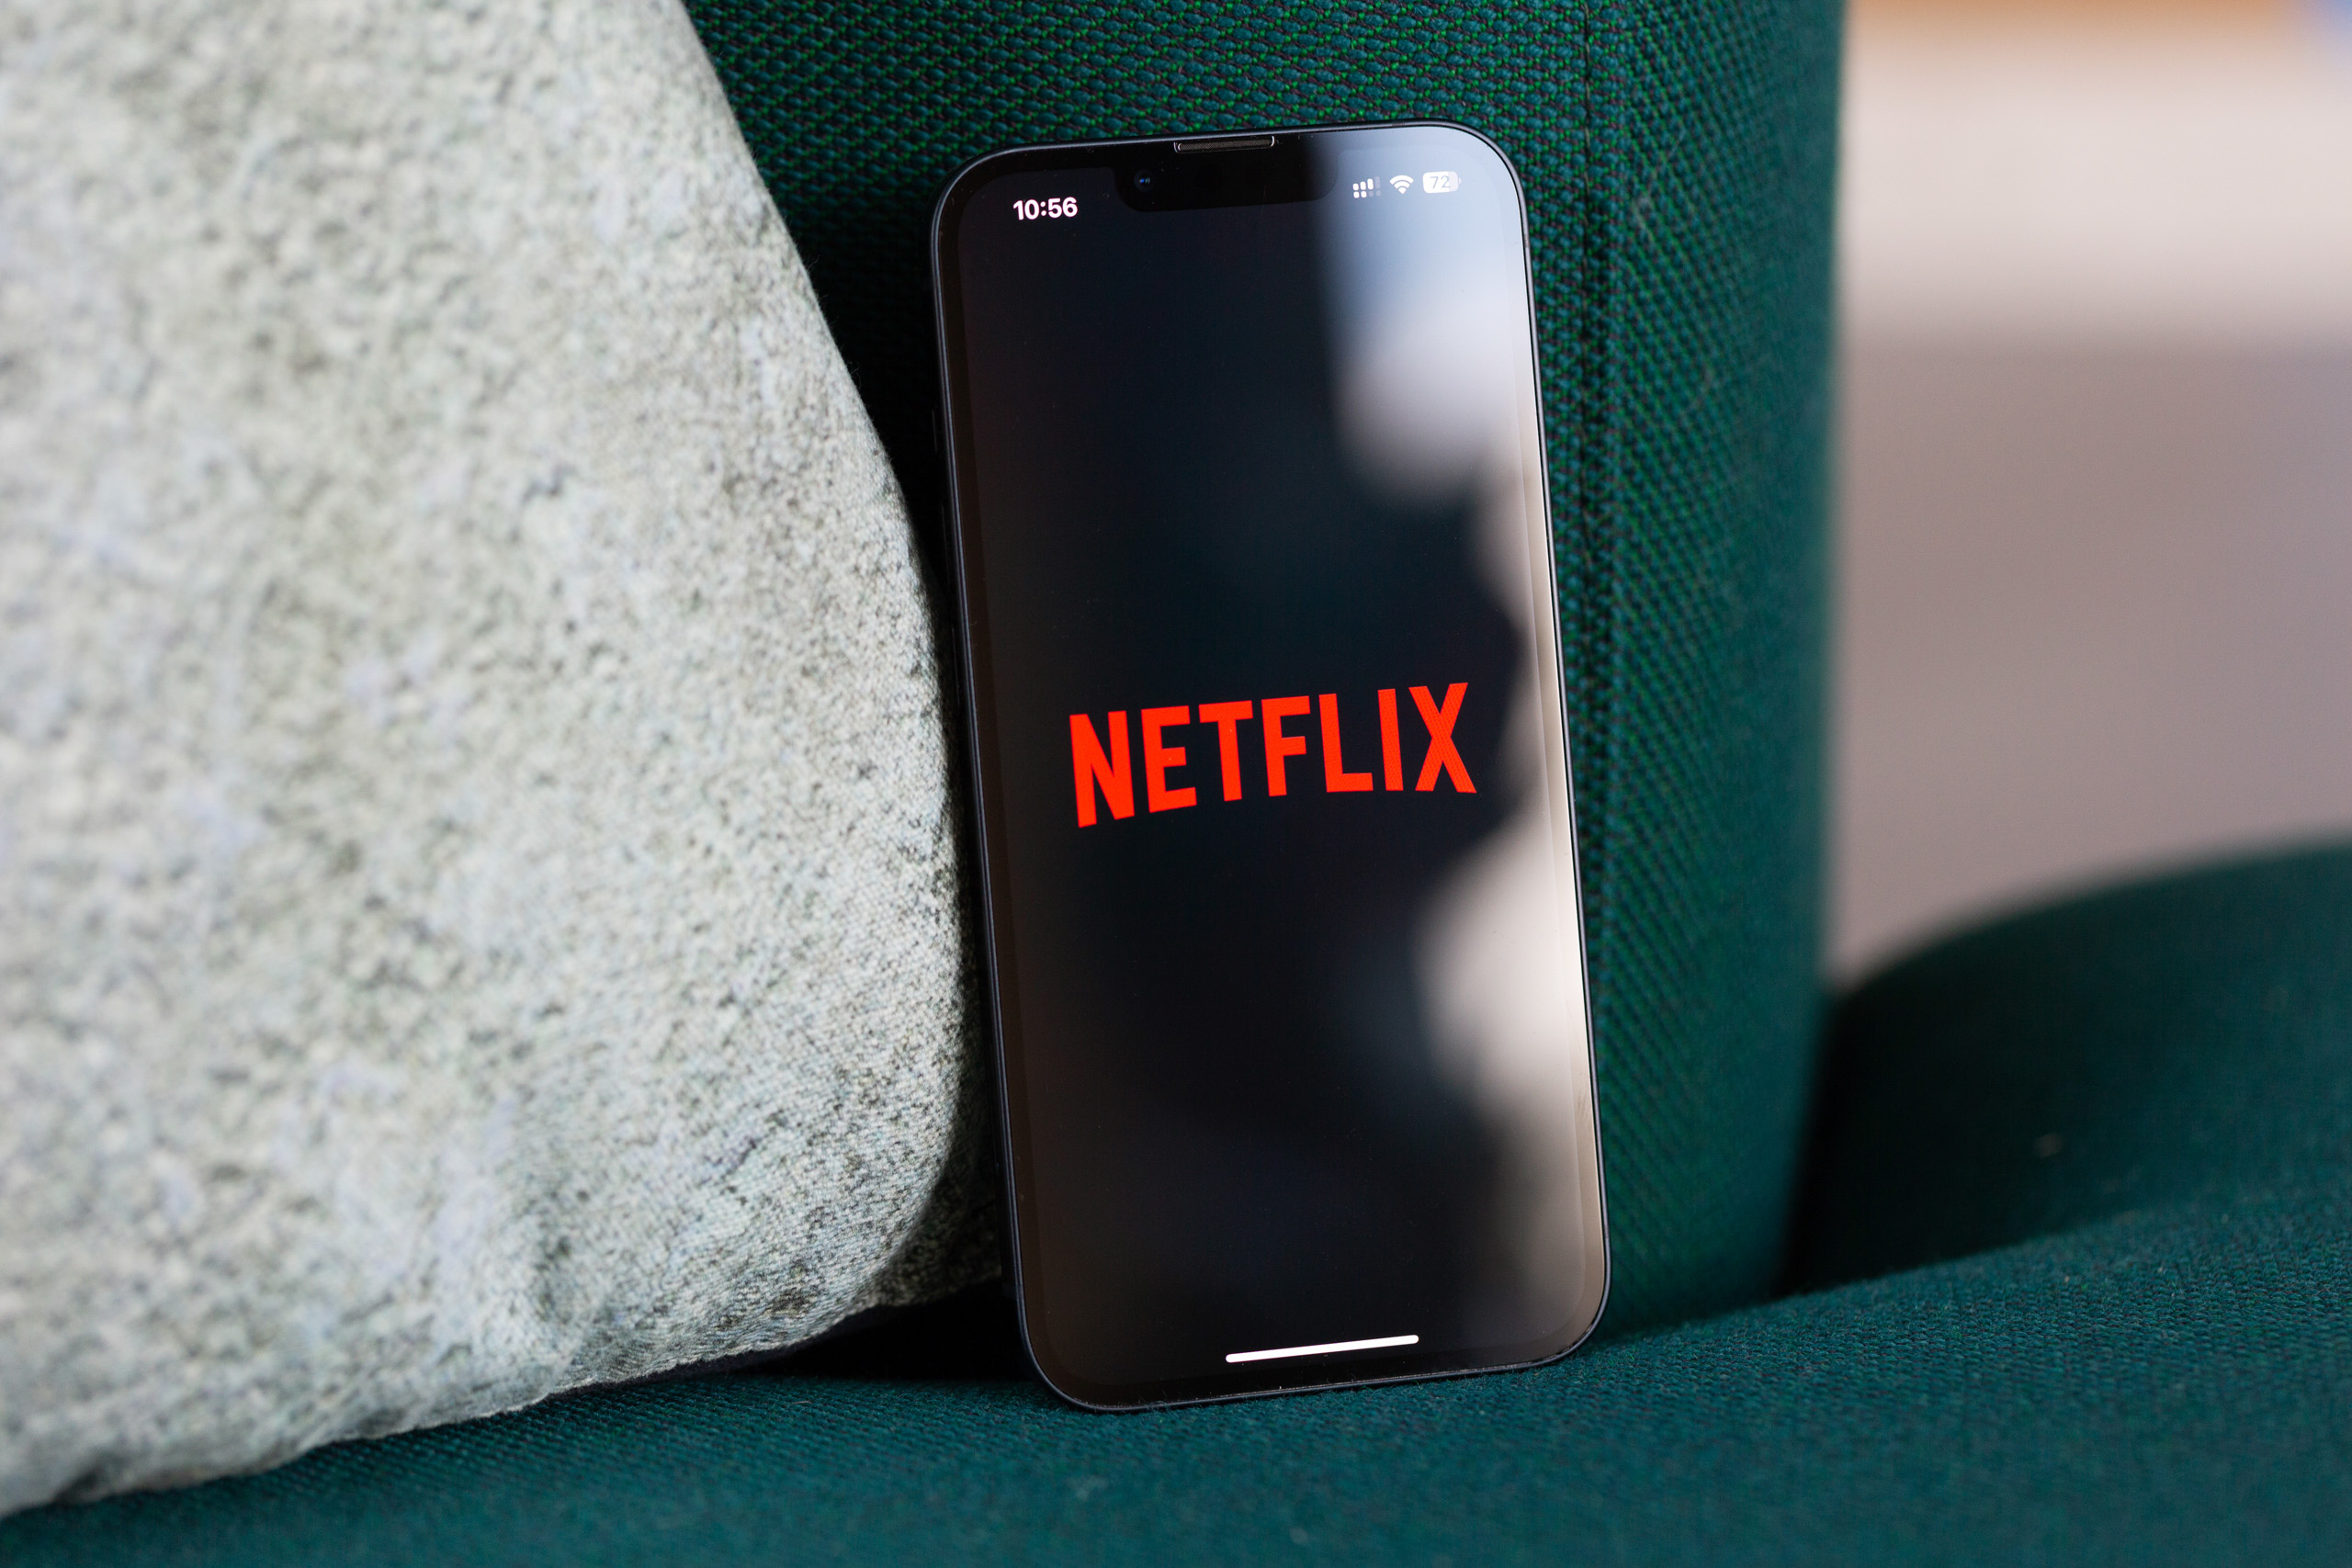 Netflix-App neu installieren
Geräteneustart durchführen